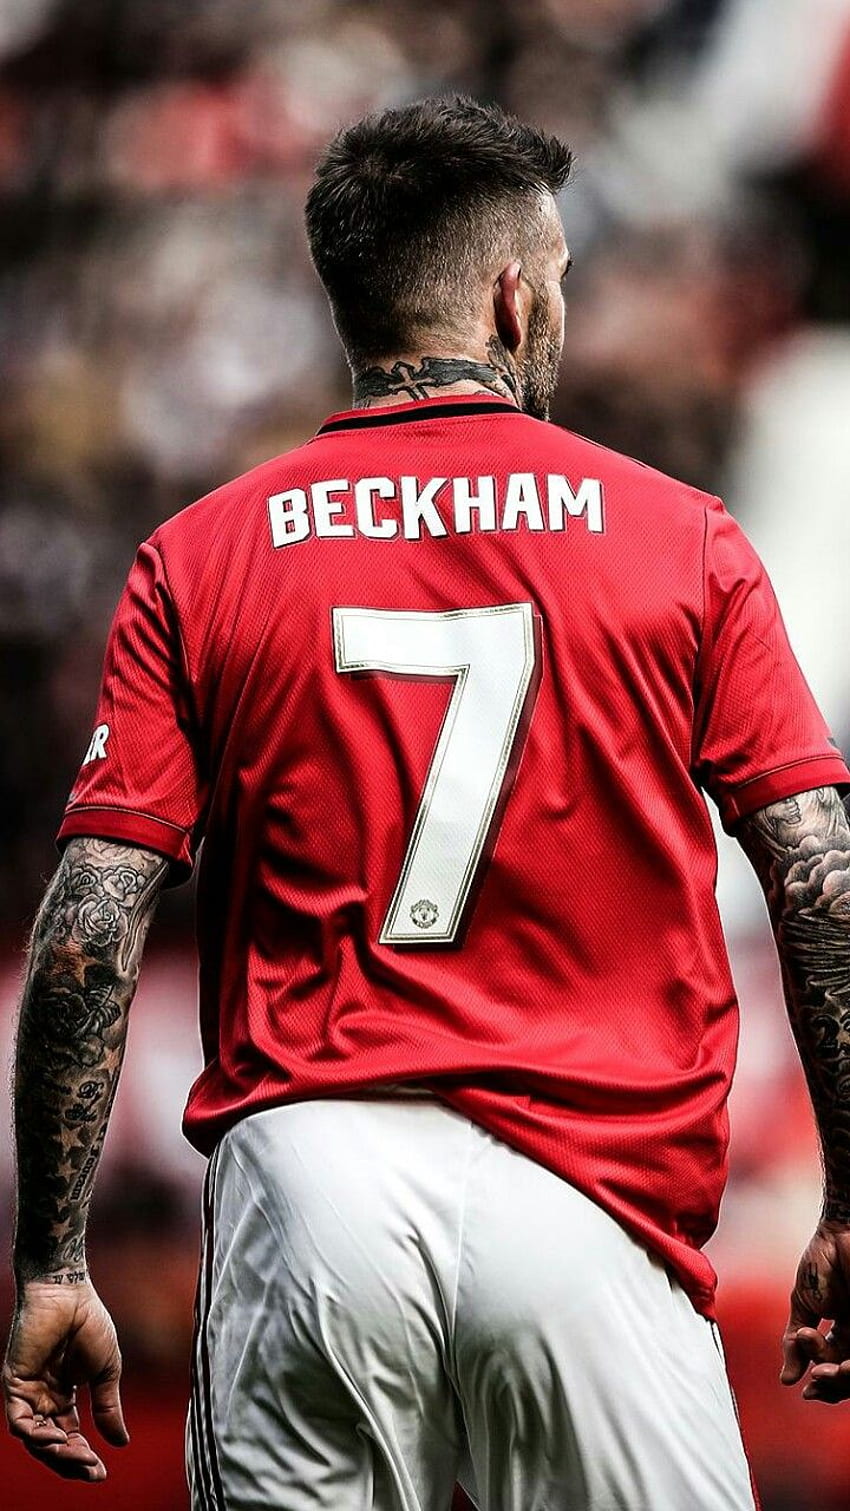 Beckham. David beckham manchester united, sepak bola David beckham, sepak bola Beckham wallpaper ponsel HD